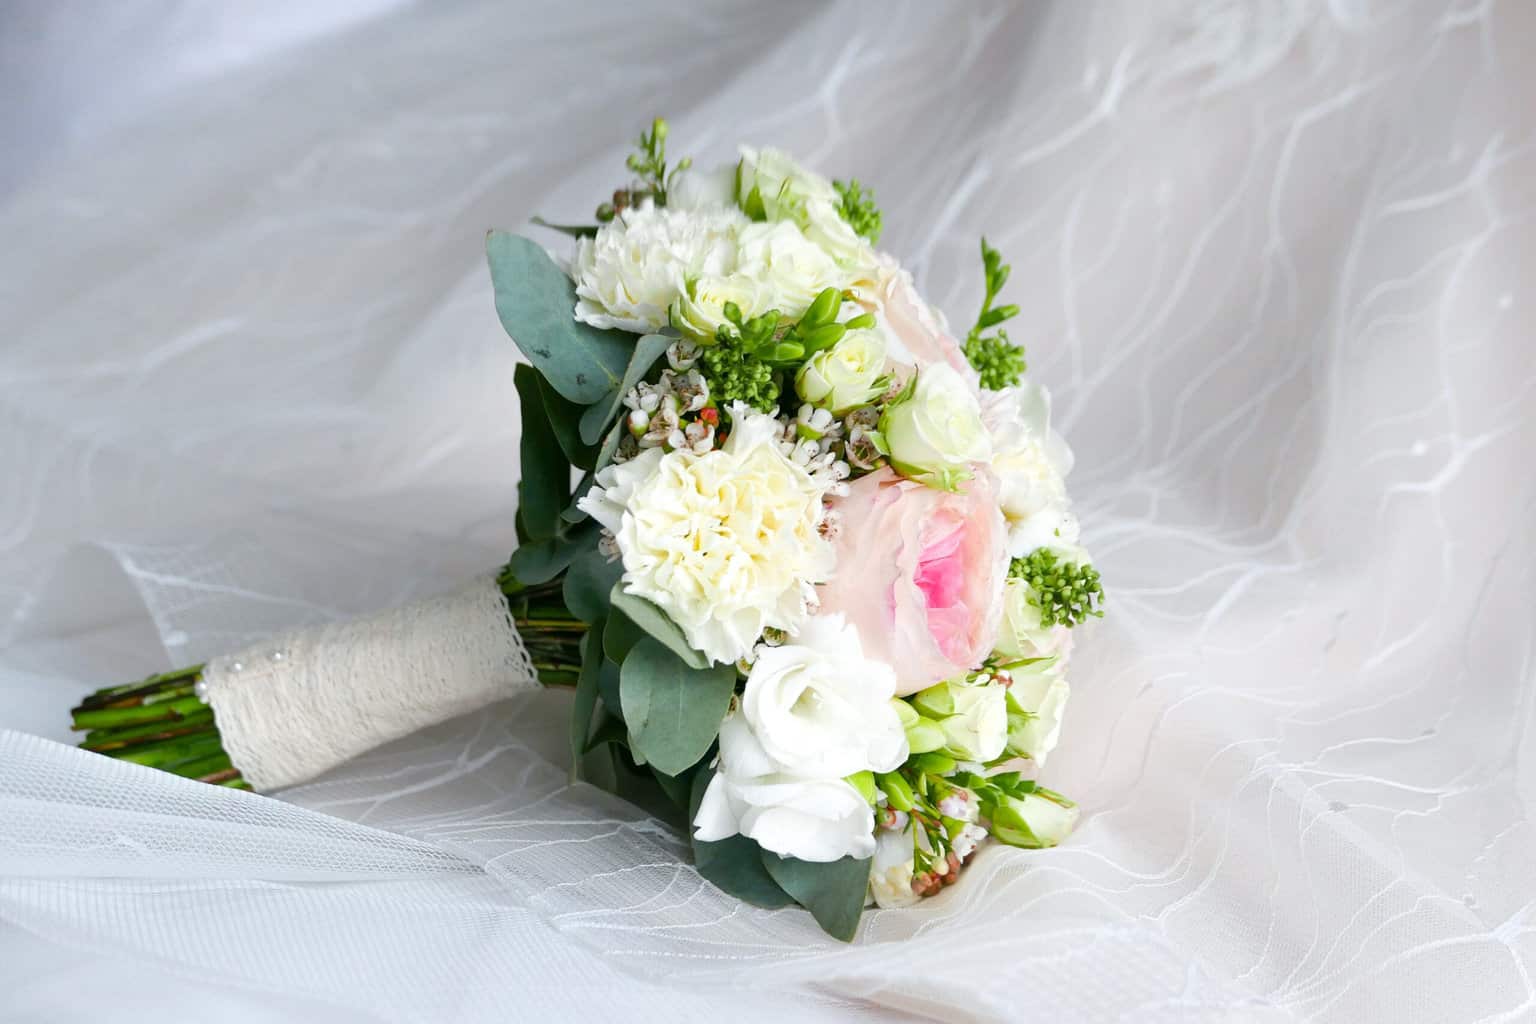 A beautiufil bridal bouquet.